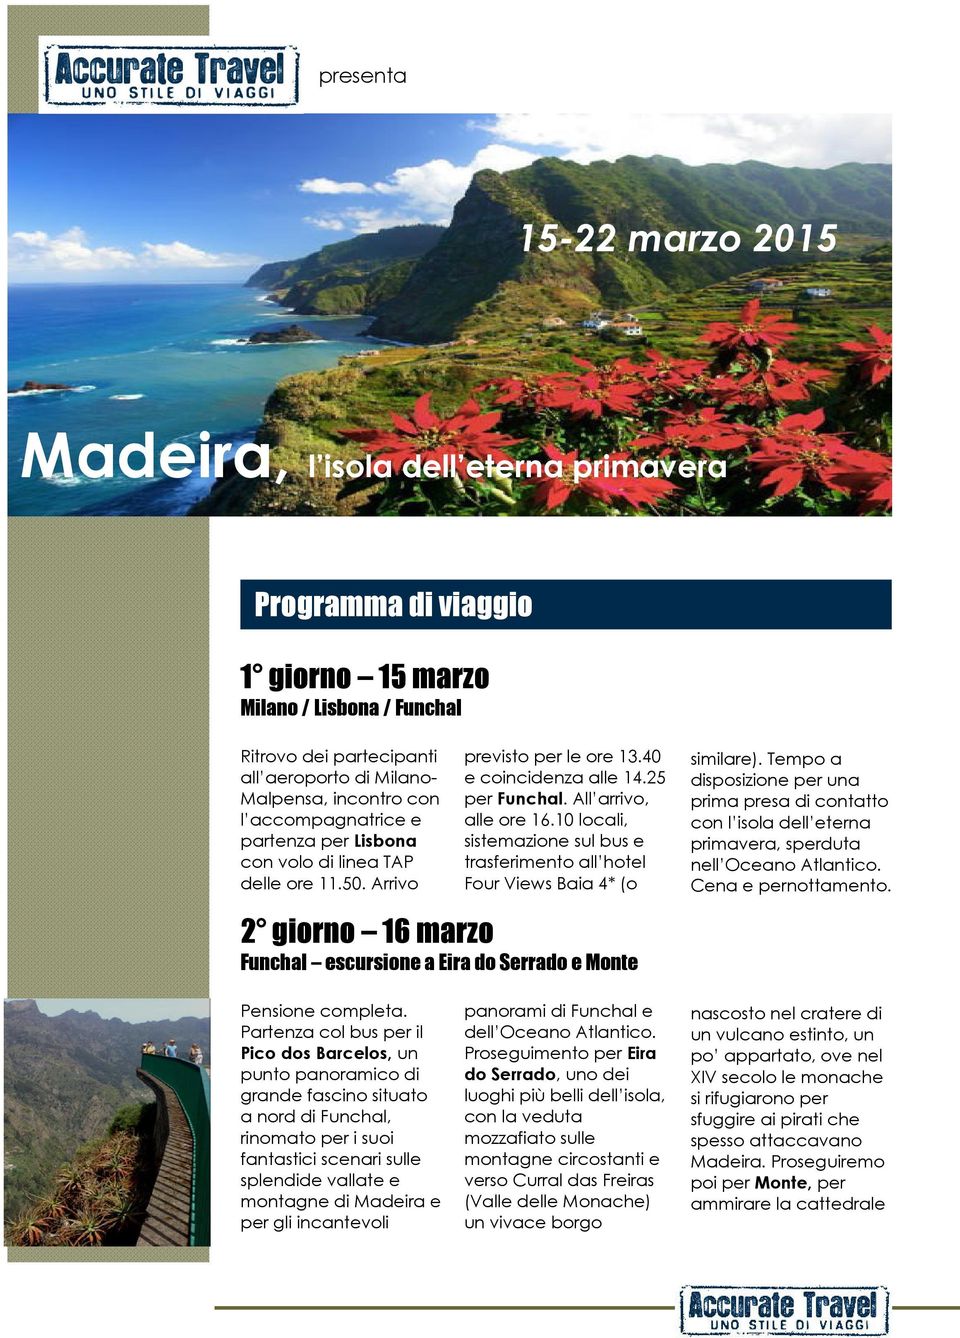 10 locali, sistemazione sul bus e trasferimento all hotel Four Views Baia 4* (o 2 giorno 16 marzo Funchal escursione a Eira do Serrado e Monte similare).